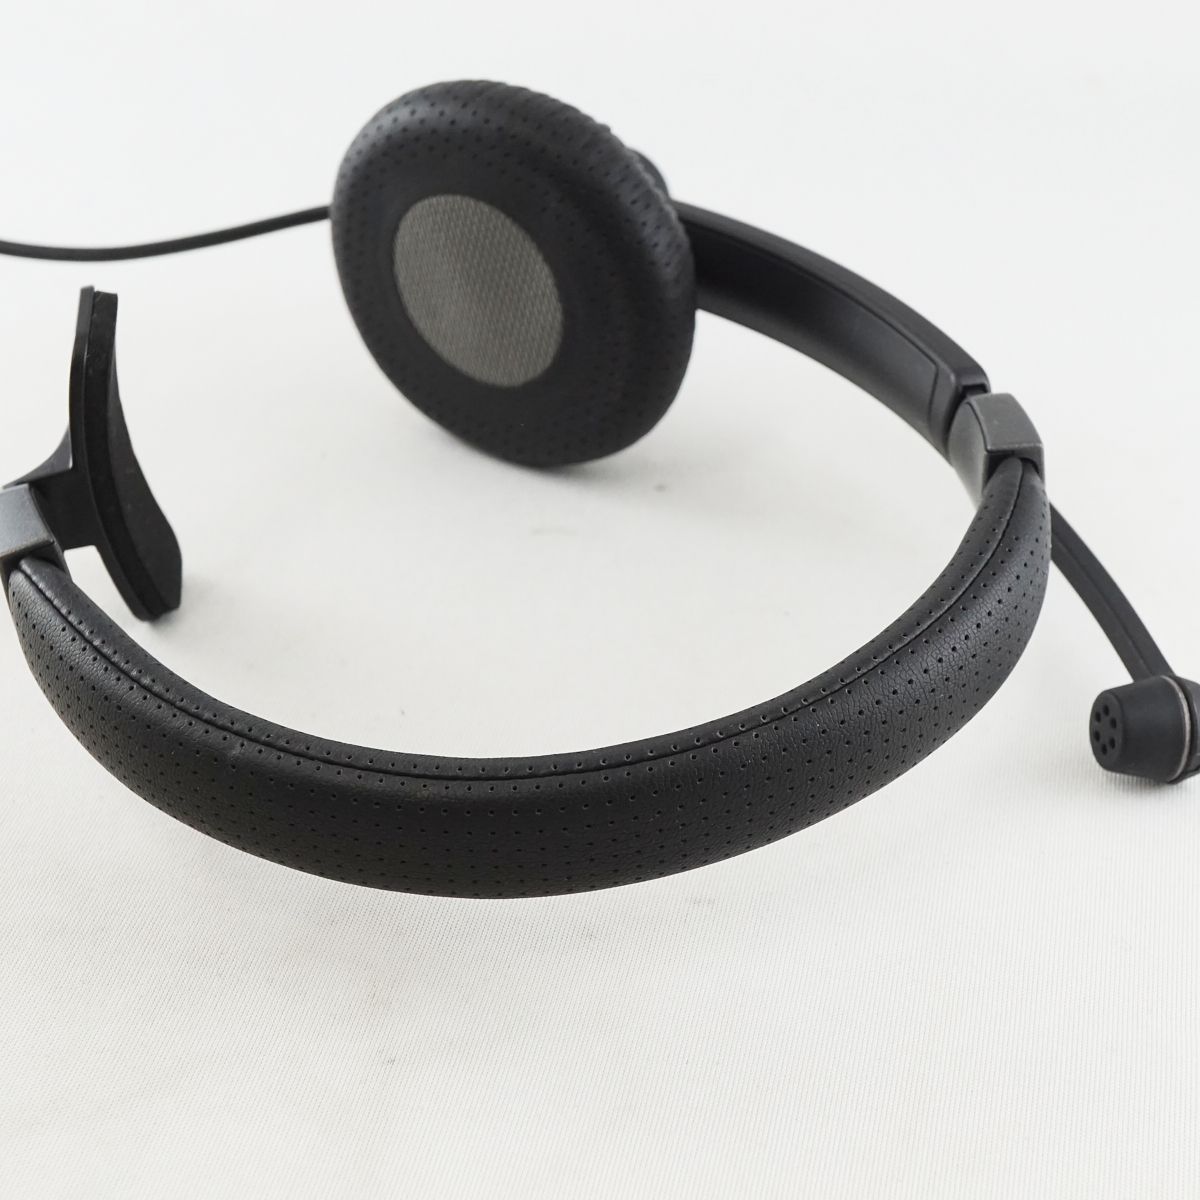 片耳用ヘッドセット(USB) - ヘッドホン